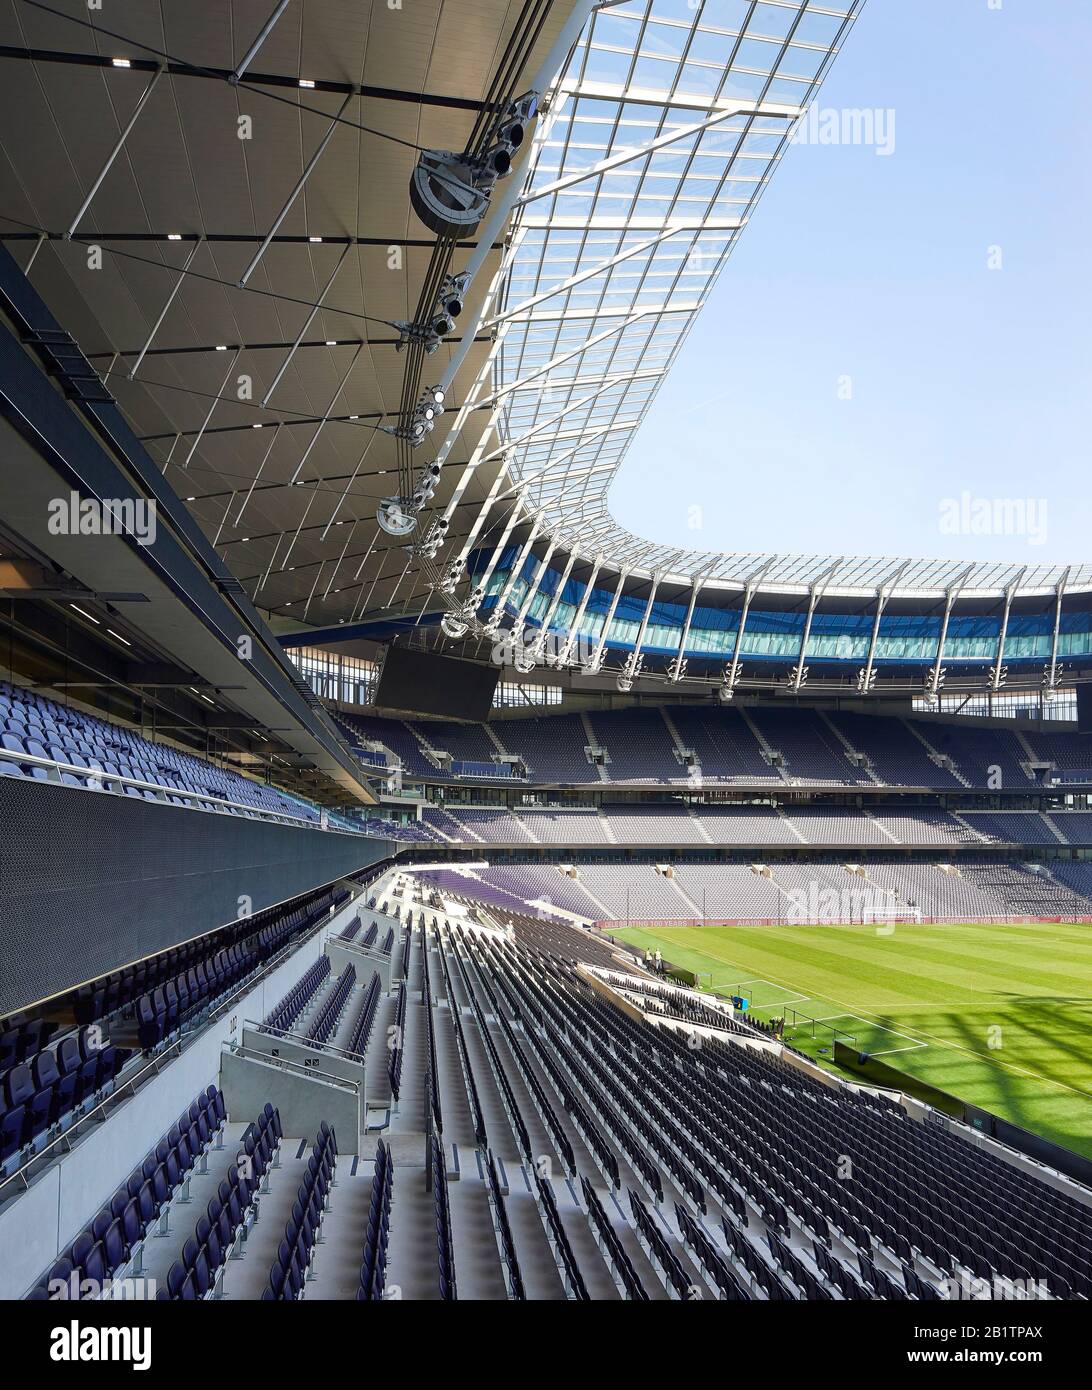 Détail du stade vide avec places assises à plusieurs niveaux. The New Tottenham Hotspur Stadium, Londres, Royaume-Uni. Architecte: Populeux, 2019. Banque D'Images